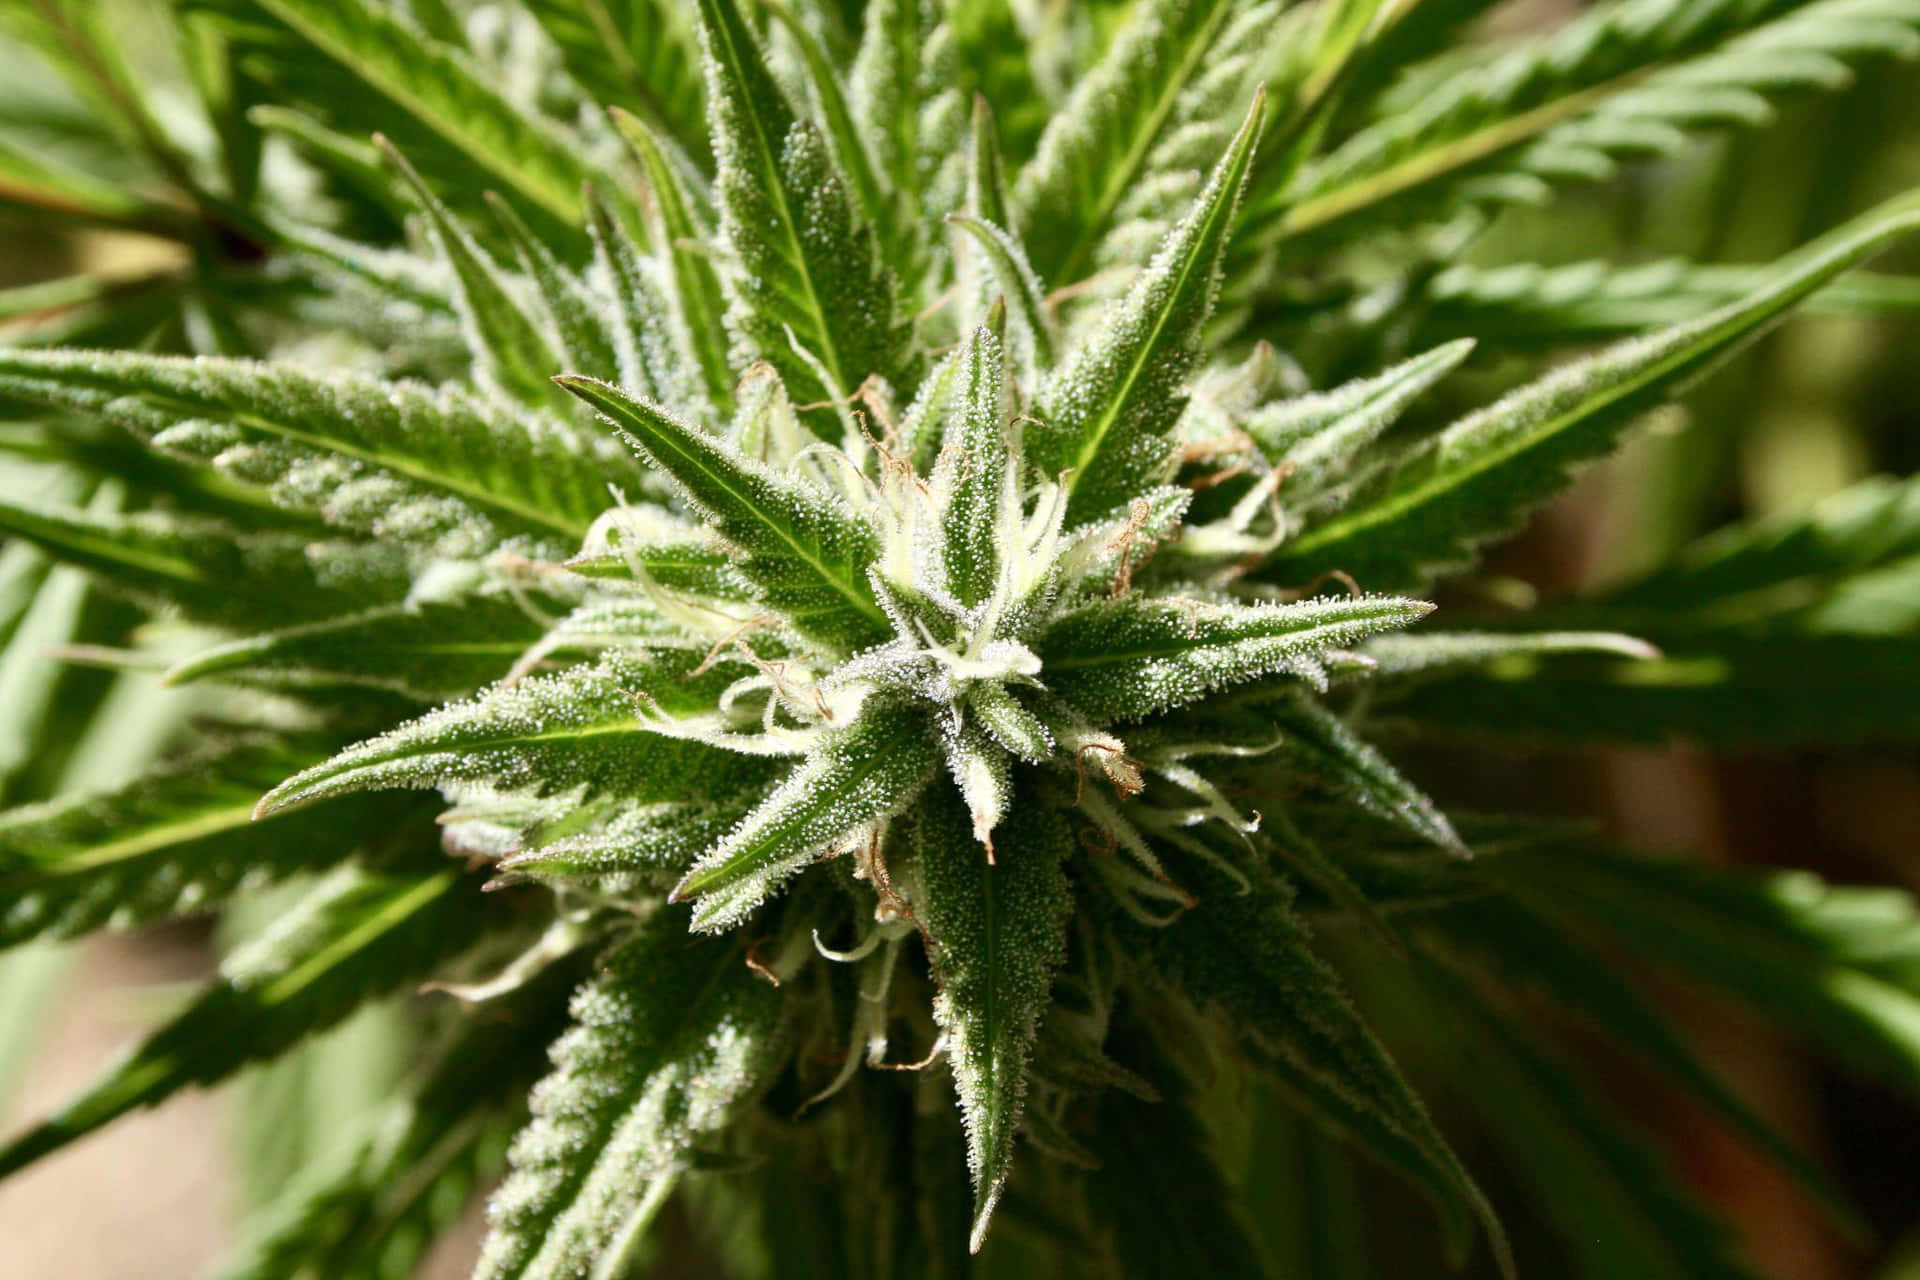 A view of a cannabis plant farm.